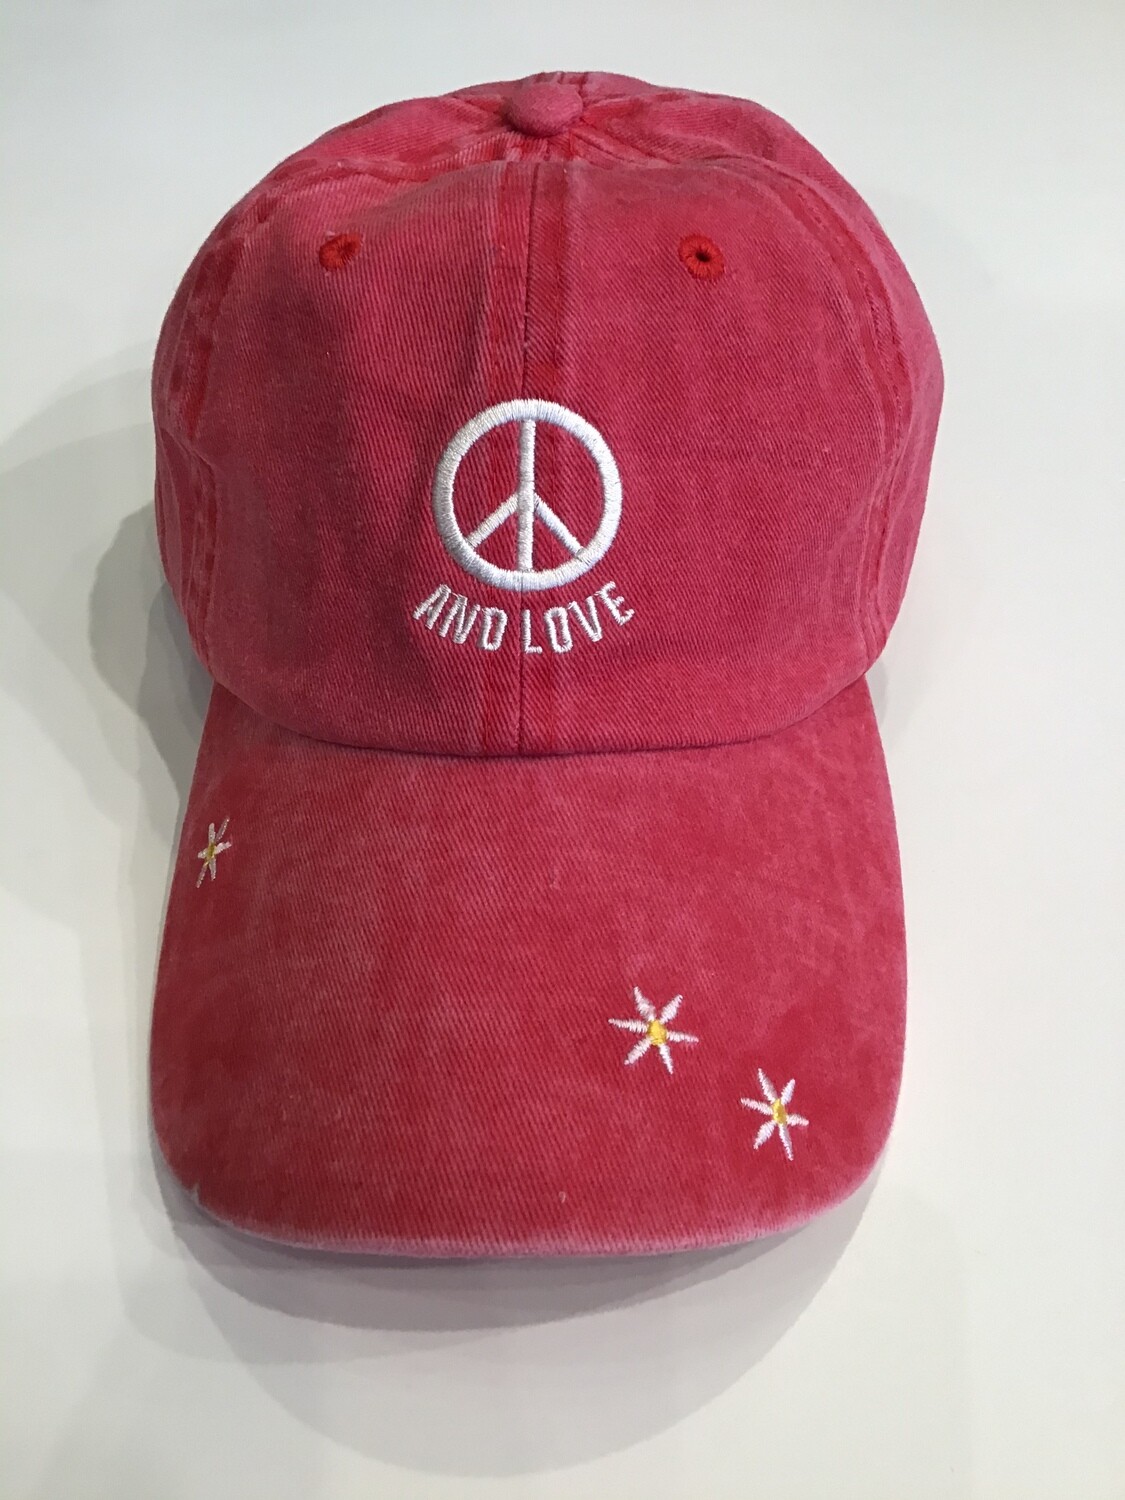 Peace and love baseball cap